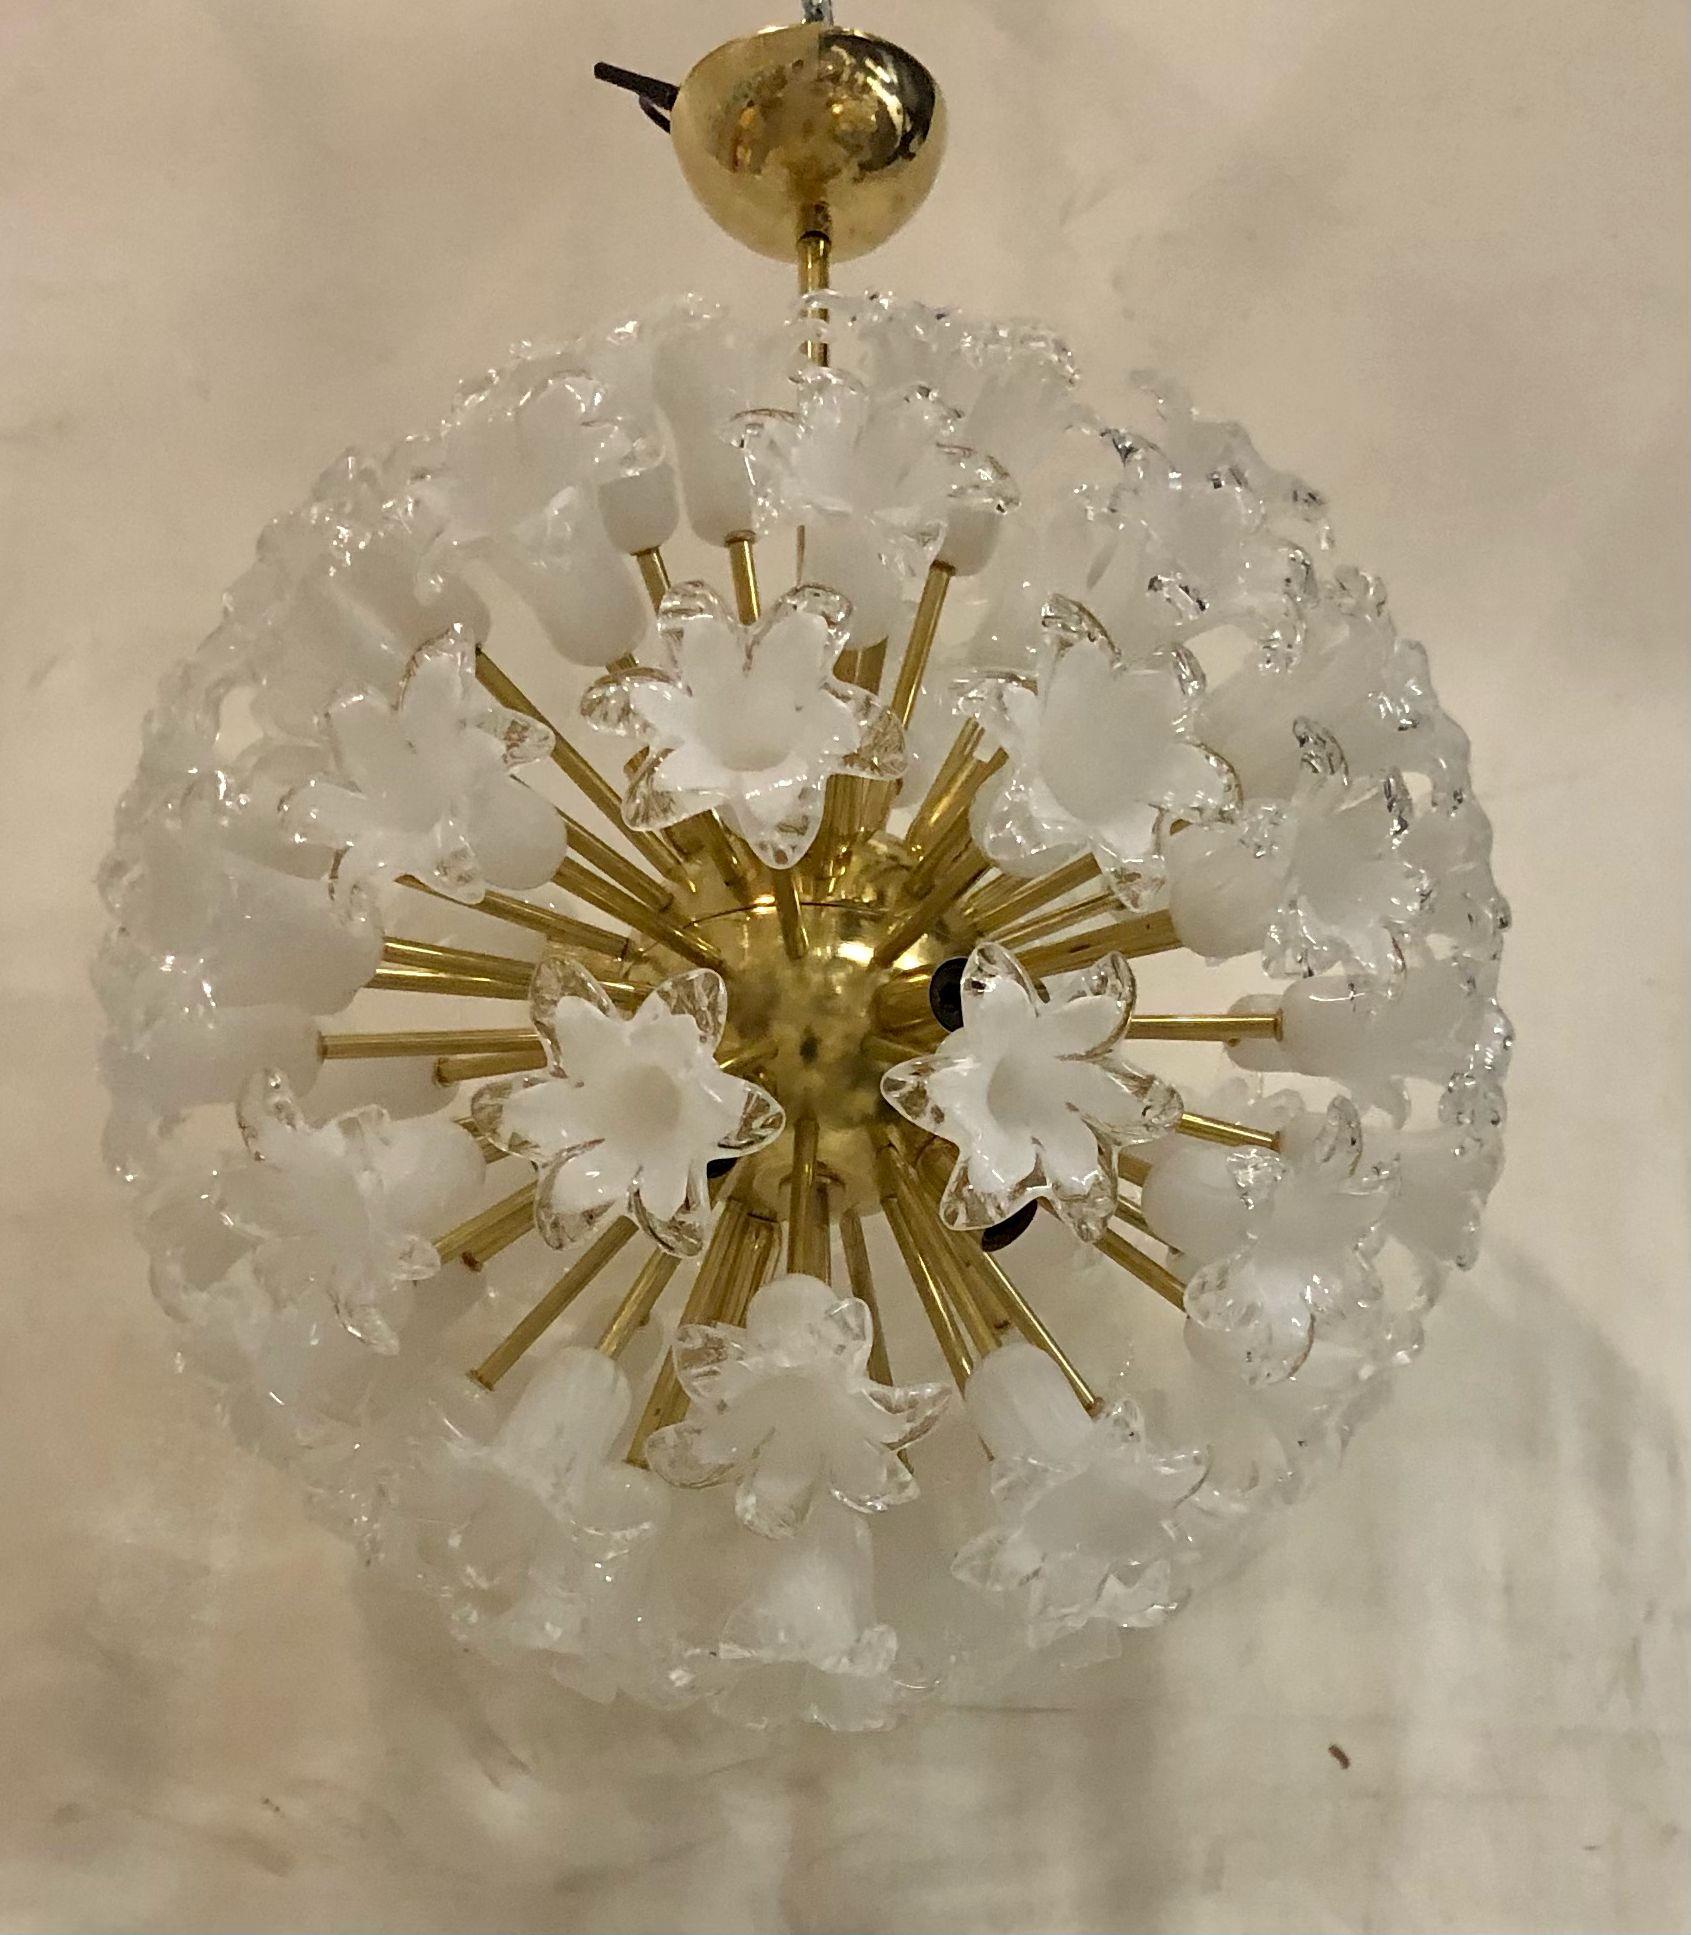 Die großen Glasblumen bilden diesen Murano-Kronleuchter aus dem Jahr 1980. Ein klassischer Sputnik aus der Mitte des Jahrhunderts.

Der Kronleuchter besteht aus einer großen zentralen Kugel, in die Messingstäbe geschraubt sind, über denen weiße